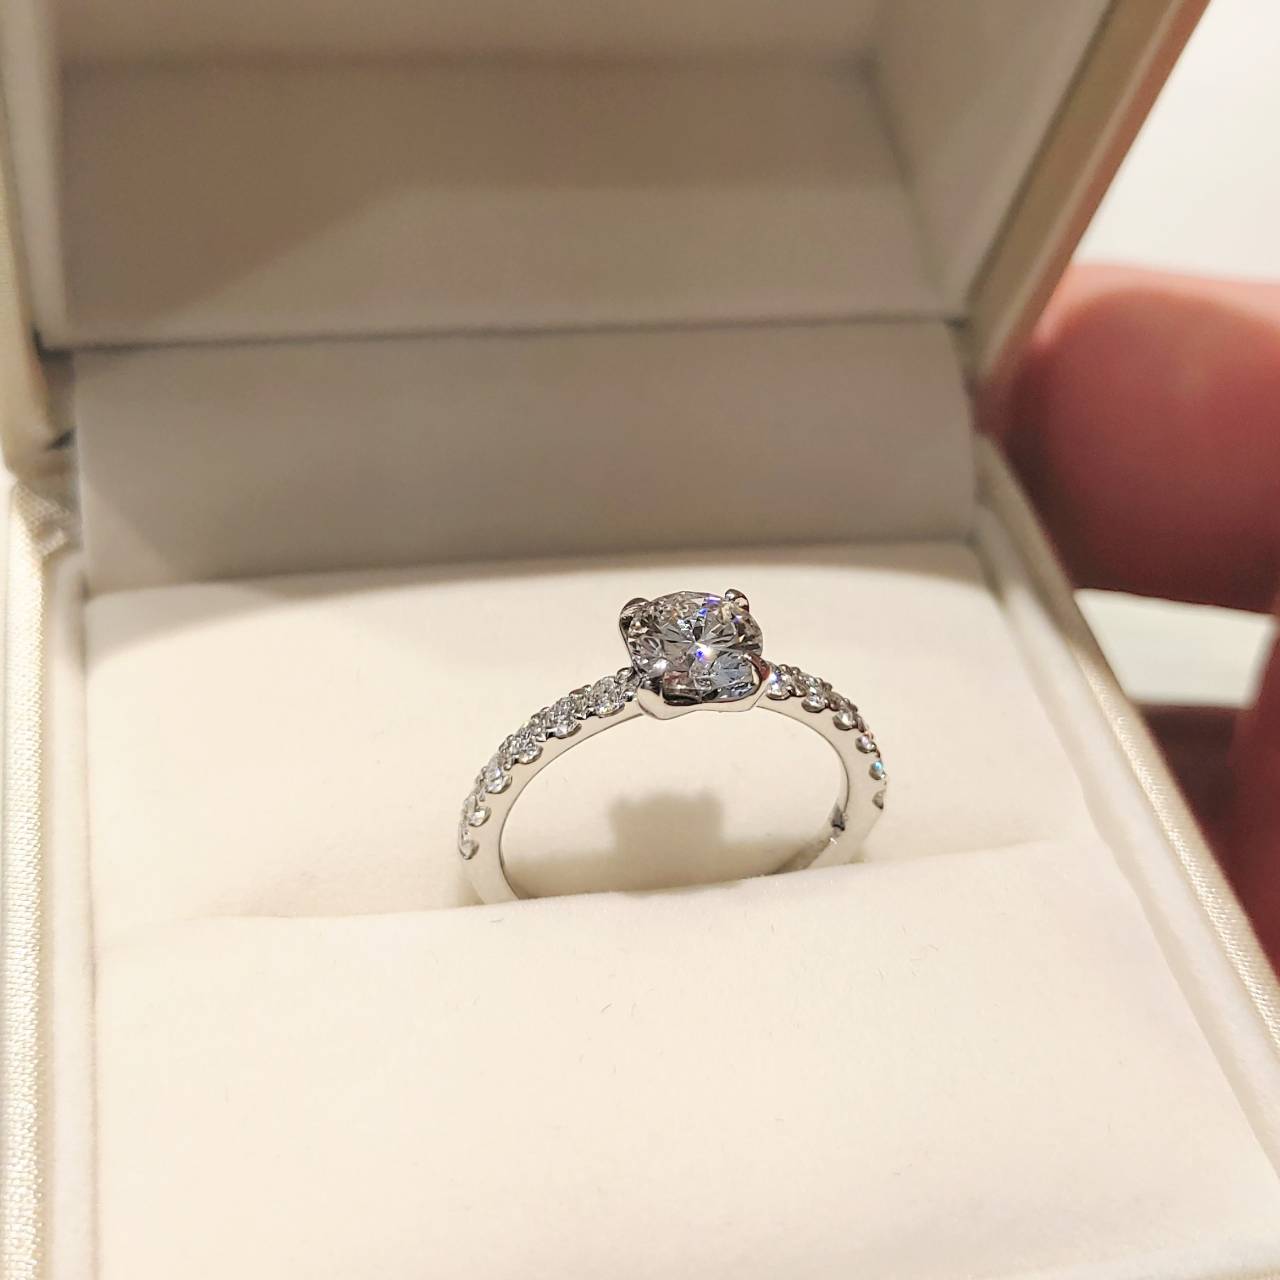 オシャレで可愛いハーフエタニティーの婚約指輪でプロポーズ♪